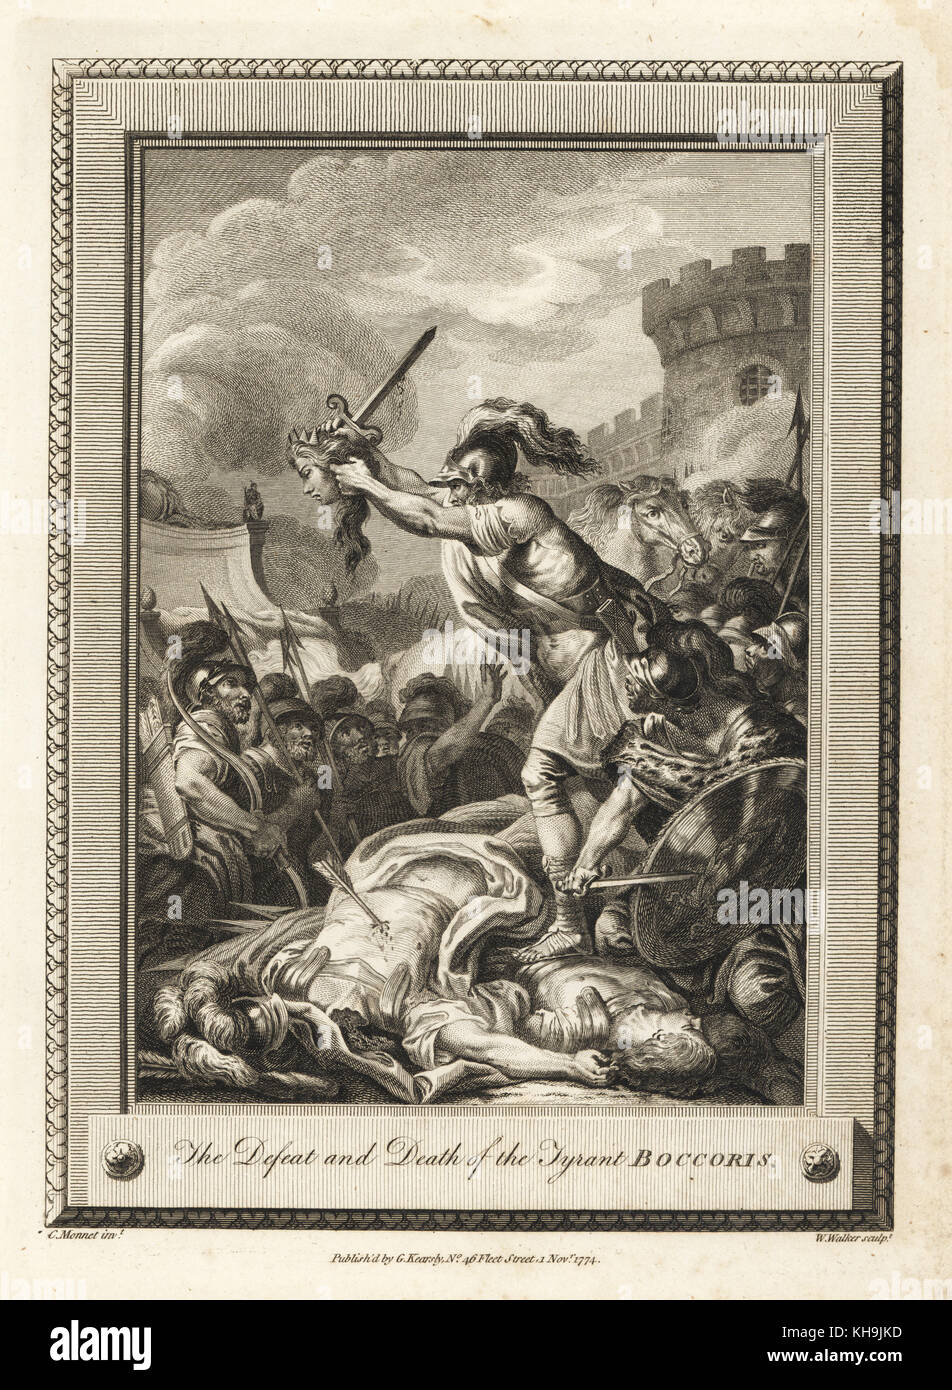 La sconfitta e la morte del tiranno Boccoris. Incisione su rame di W. Walker dopo una illustrazione di C. Monnet dalla piastrina di rame rivista mensile o Tesoro, G. Kearsley, Londra, 1778. Foto Stock